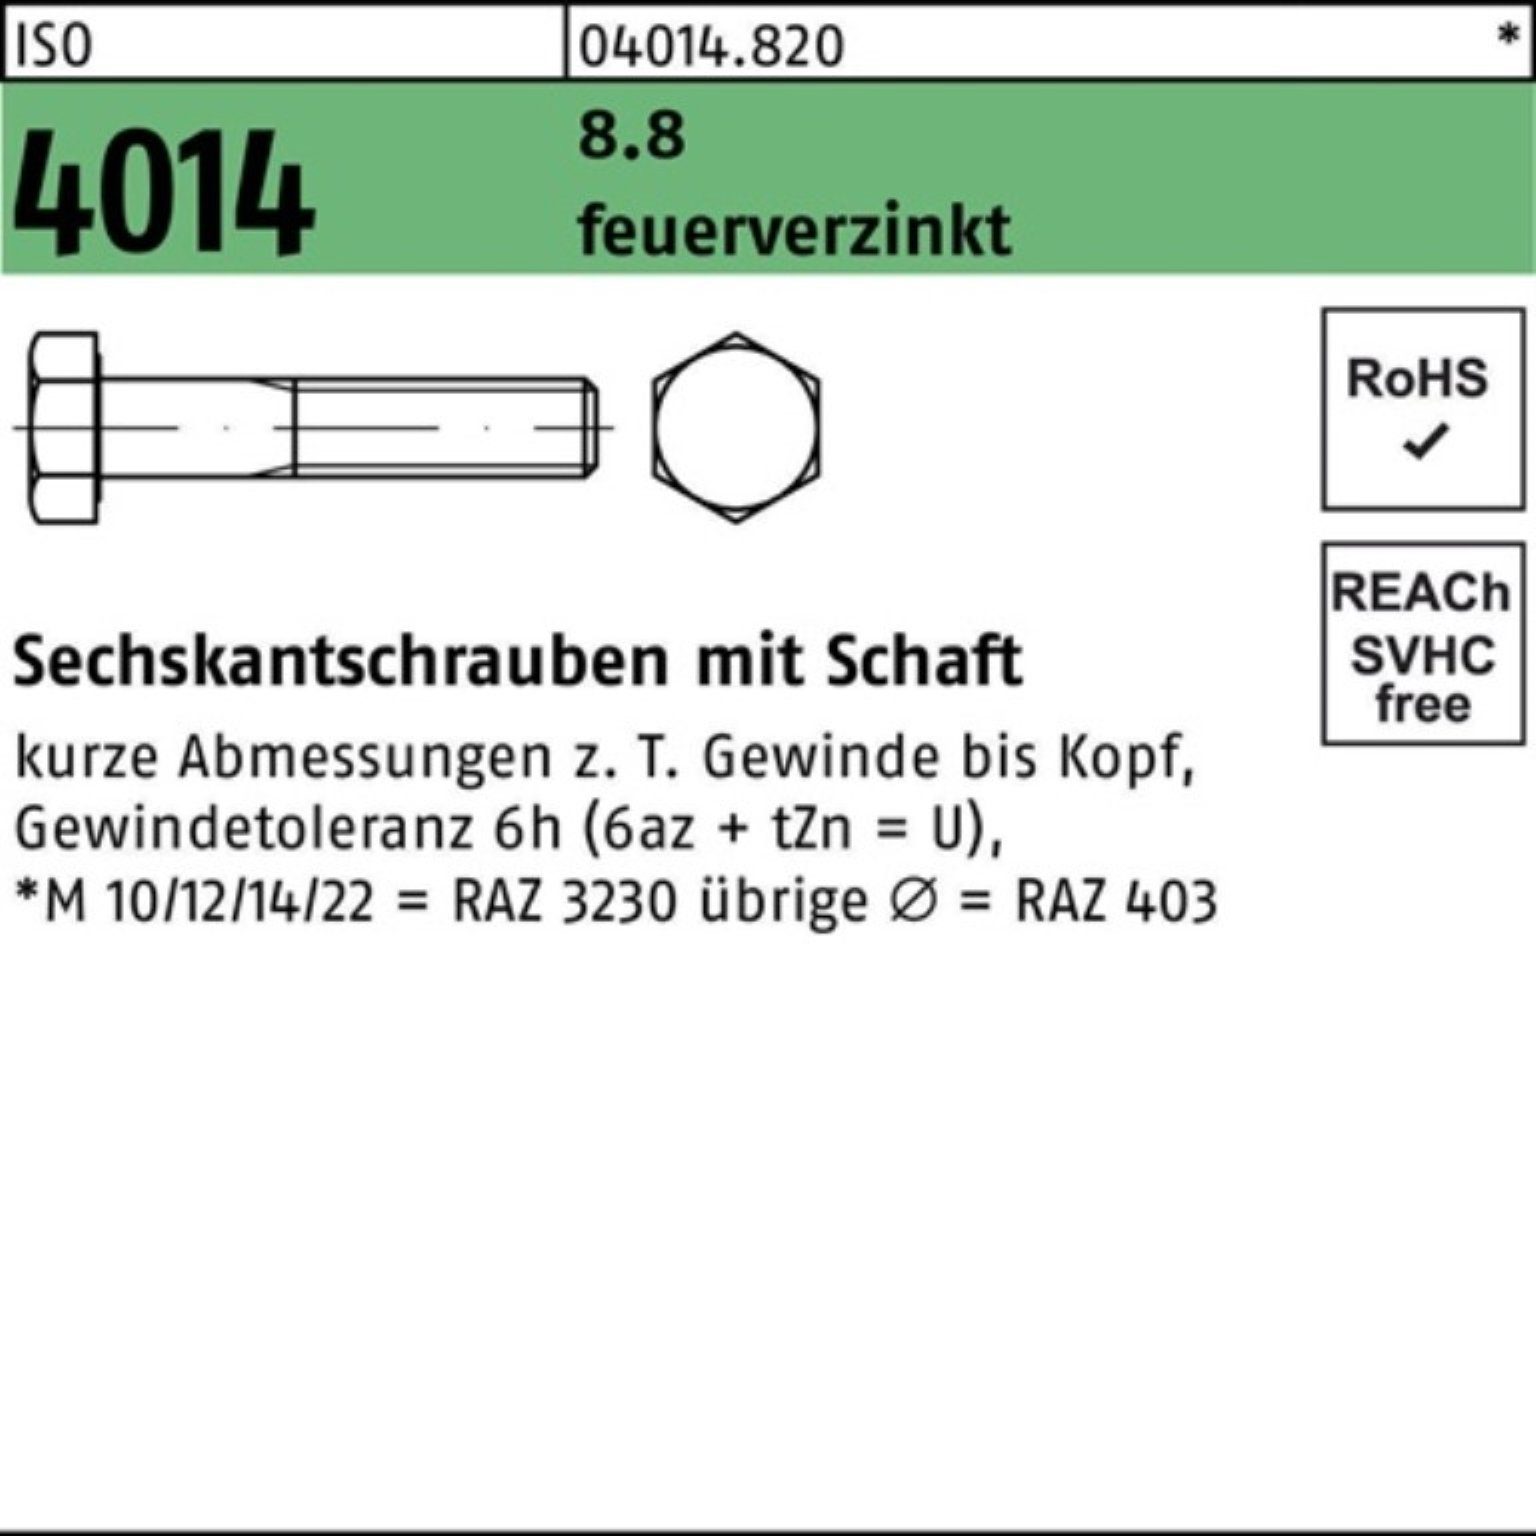 Bufab Sechskantschraube 100er Pack Sechskantschraube ISO 4014 Schaft M27x 200 8.8 feuerverz. 1